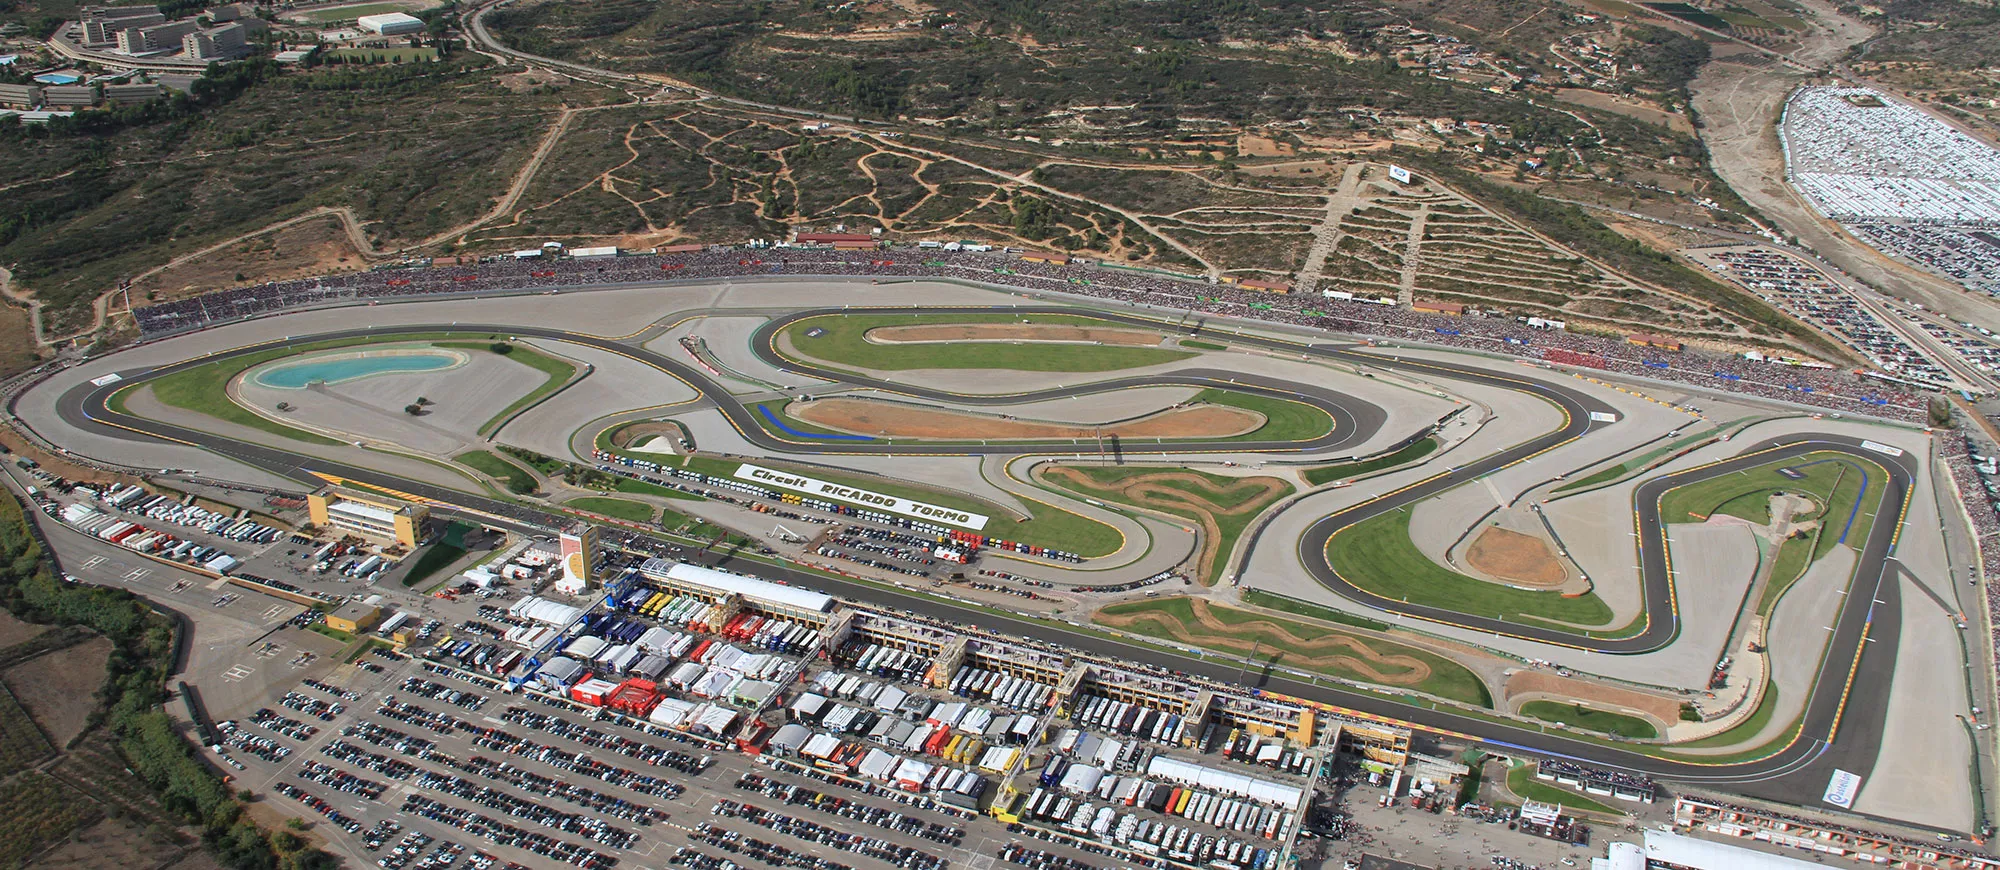 Ricardo Tormo Circuit in Spain, Europe | Racing,Motorcycles - Rated 4.6